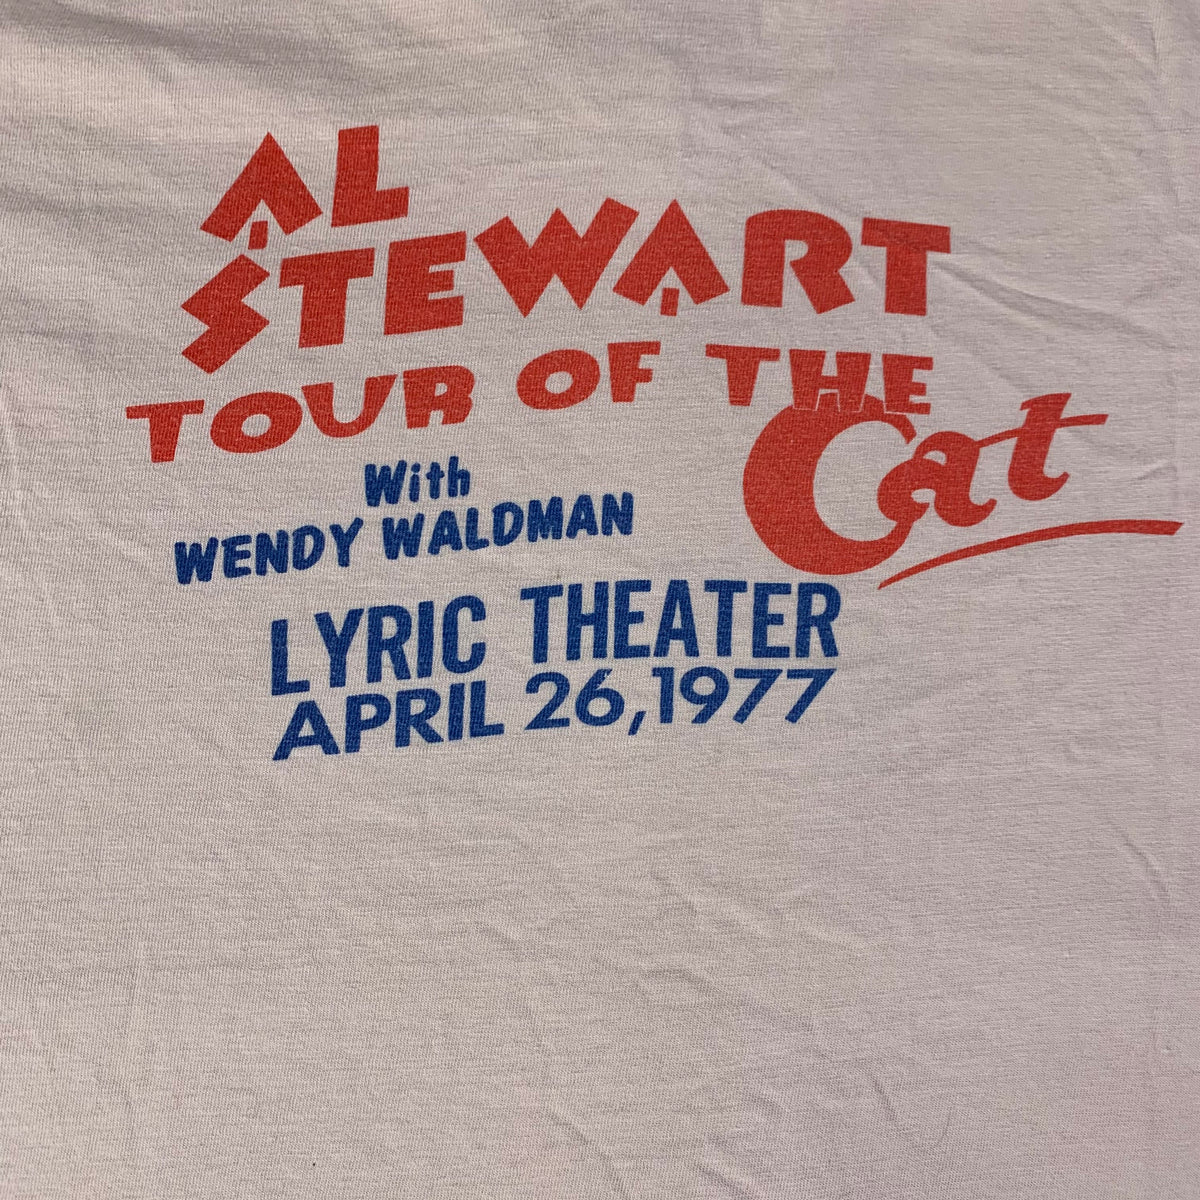 Vintage Al Stewart &quot;Tour Of The Cat&quot; T-Shirt